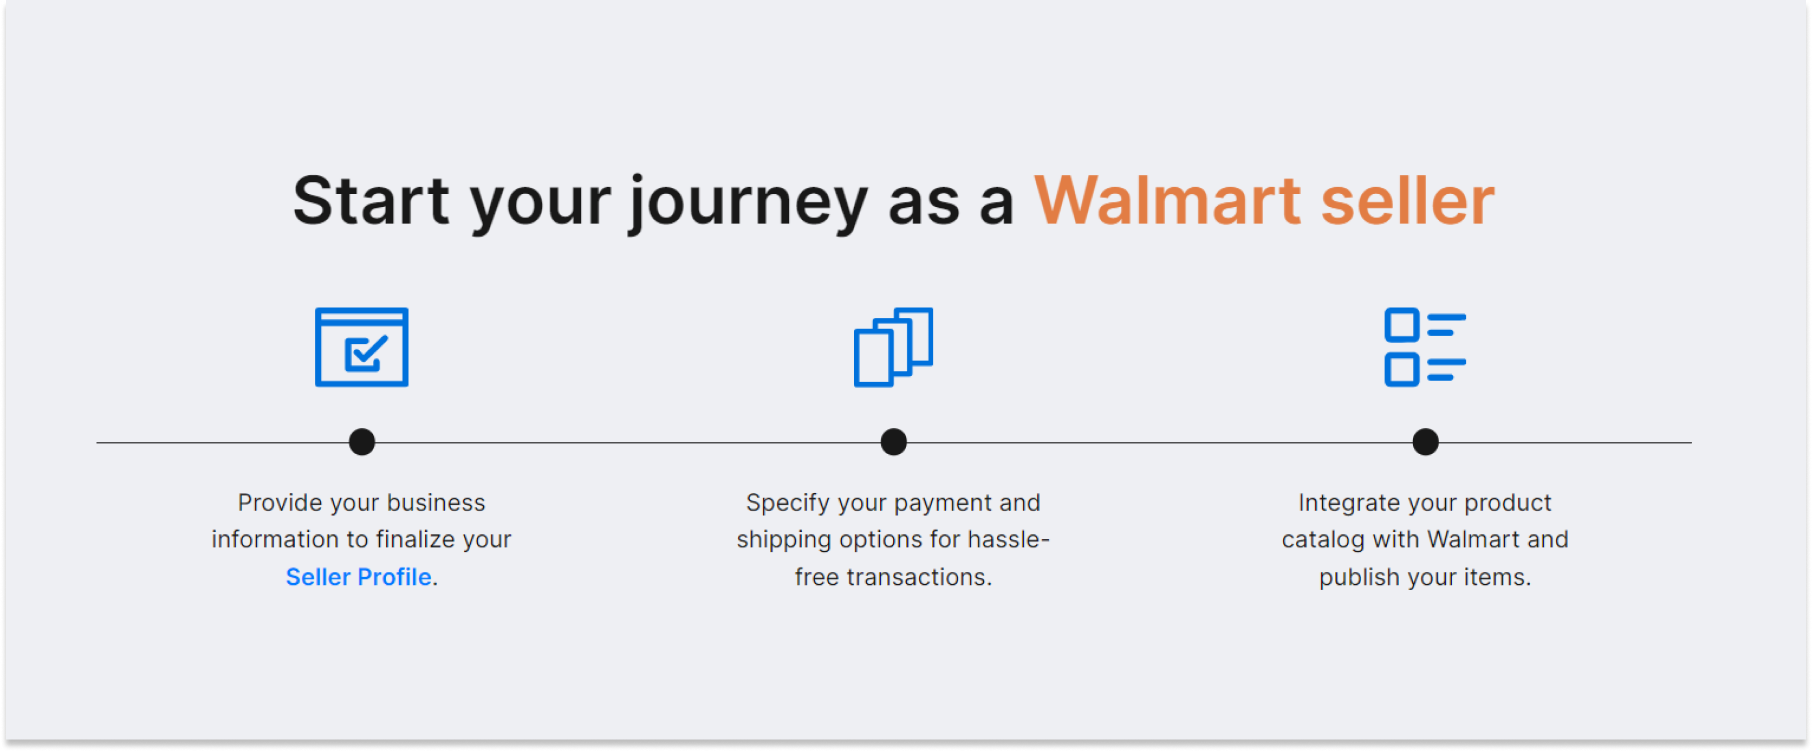 Start your joutney as a Walmart seller